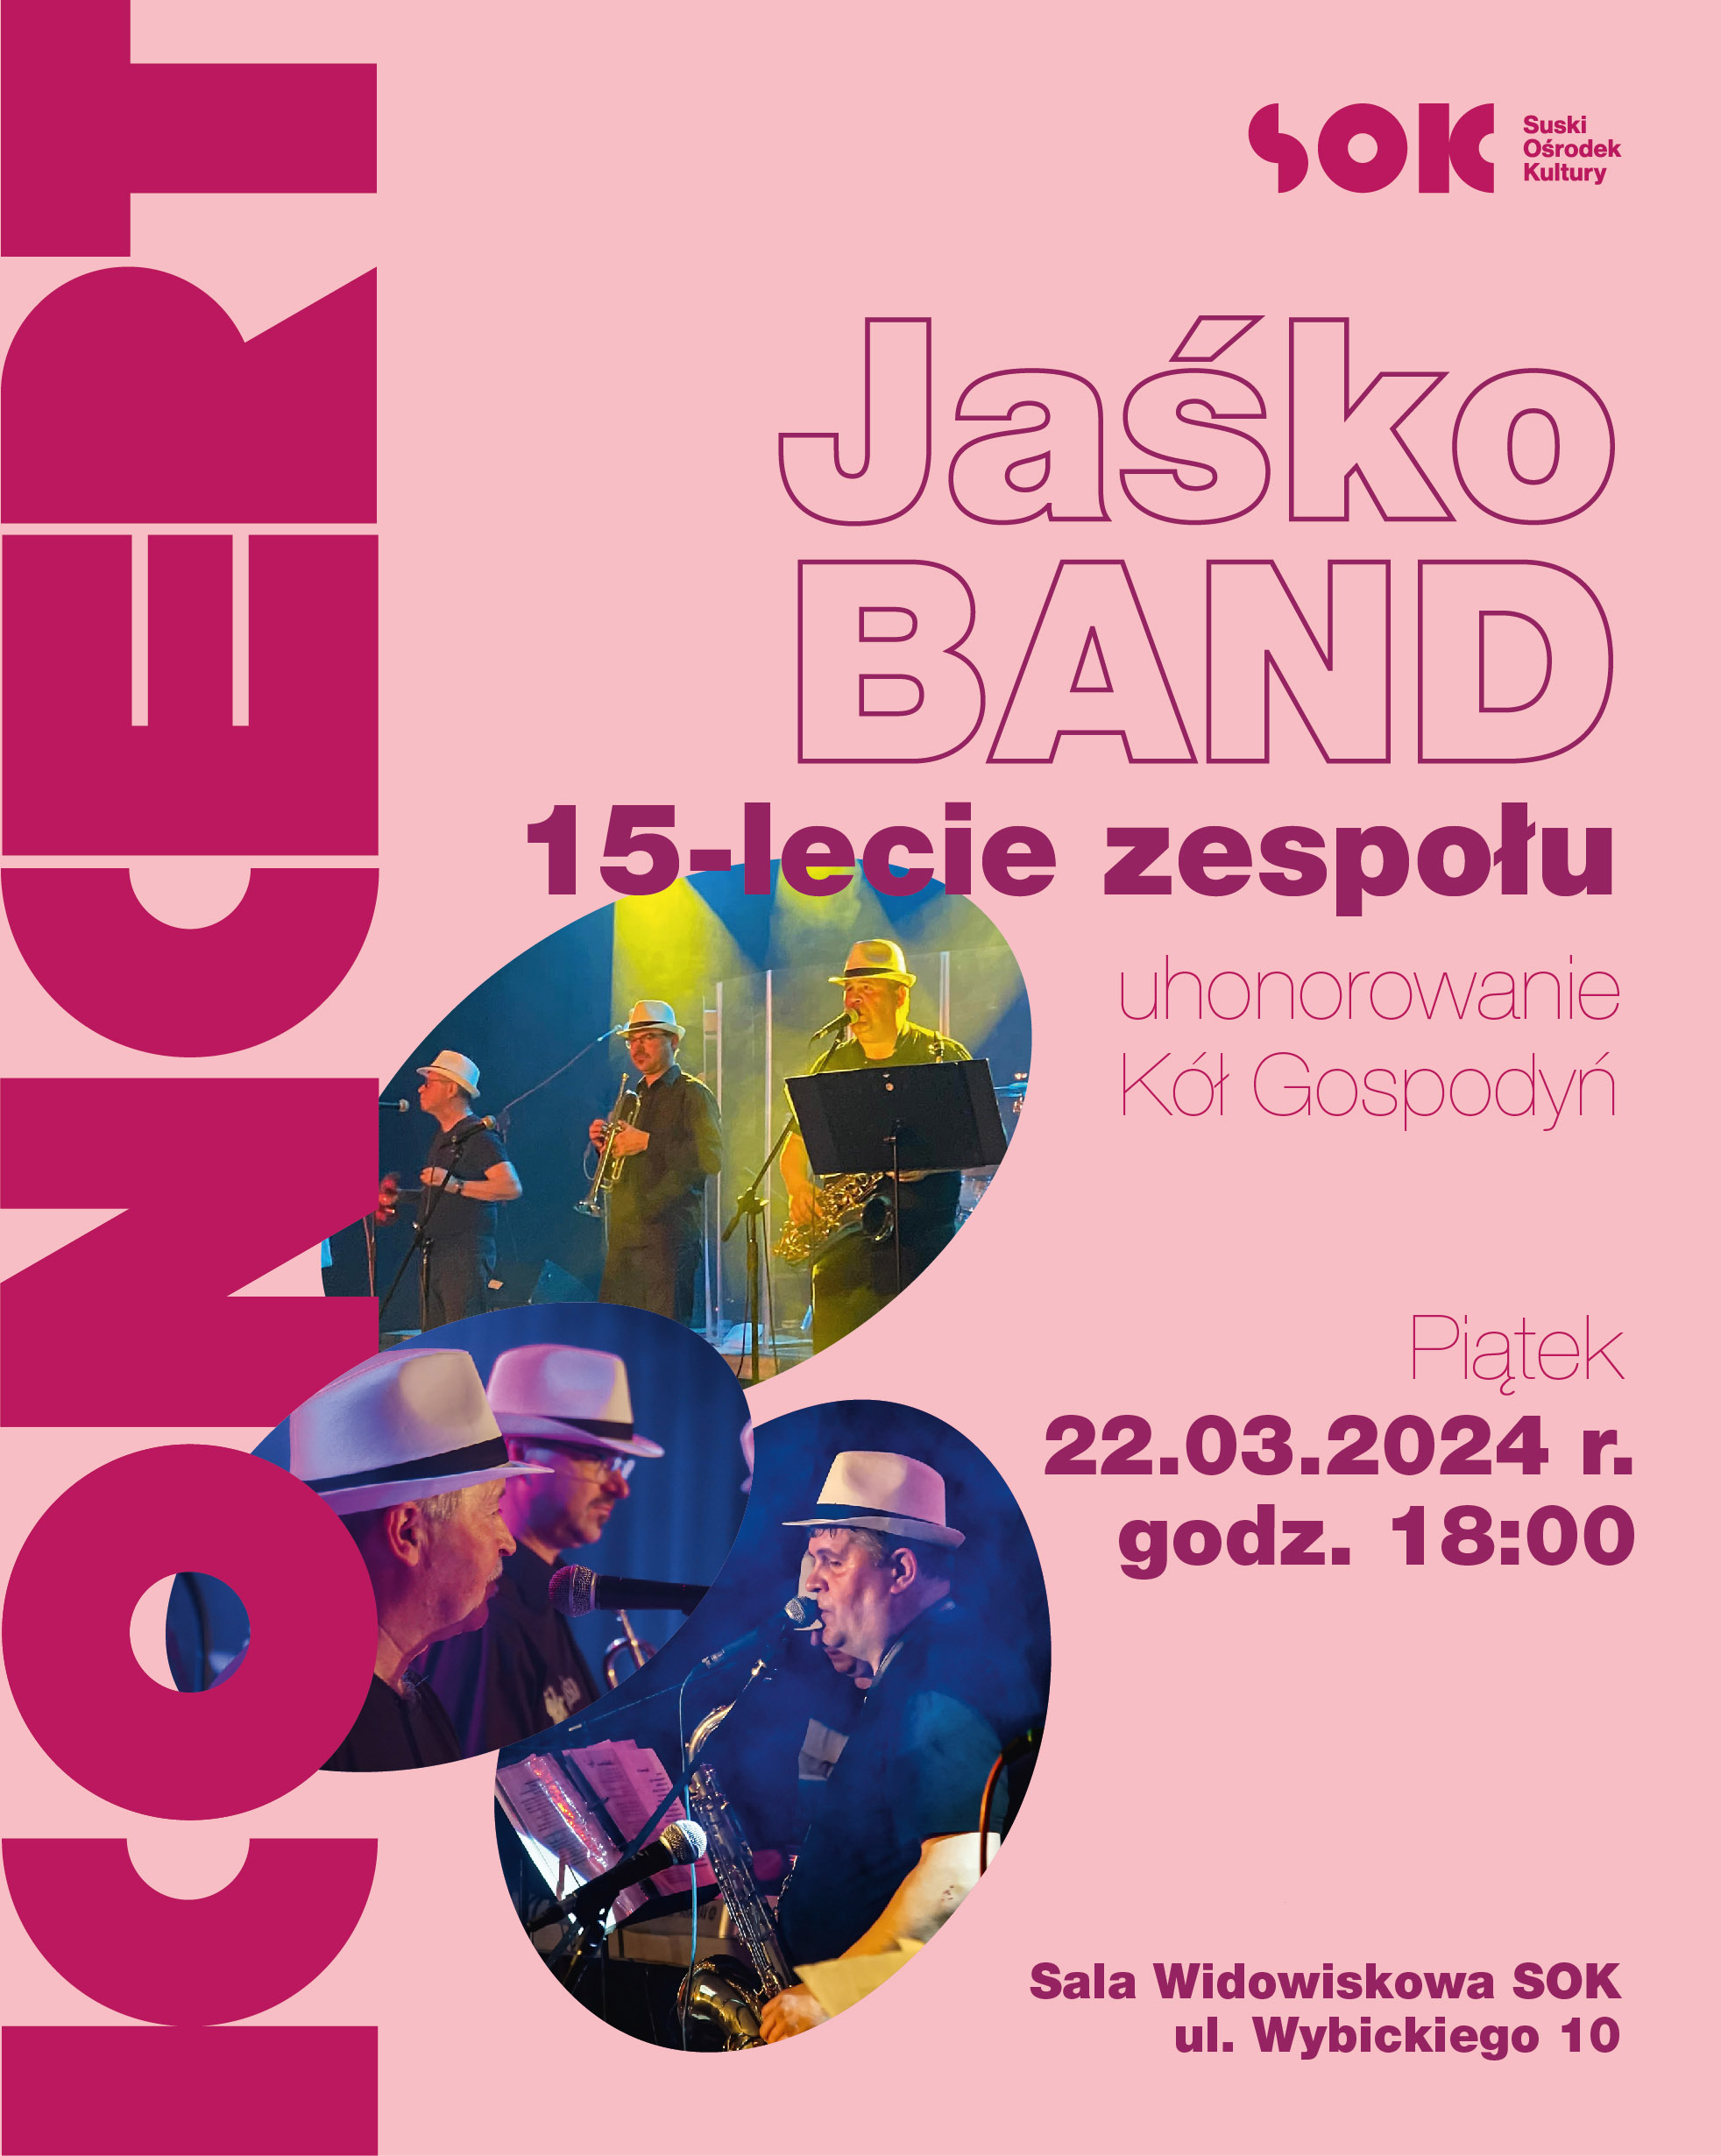 15-lecie Jaśko Band + uhonorowanie KGW